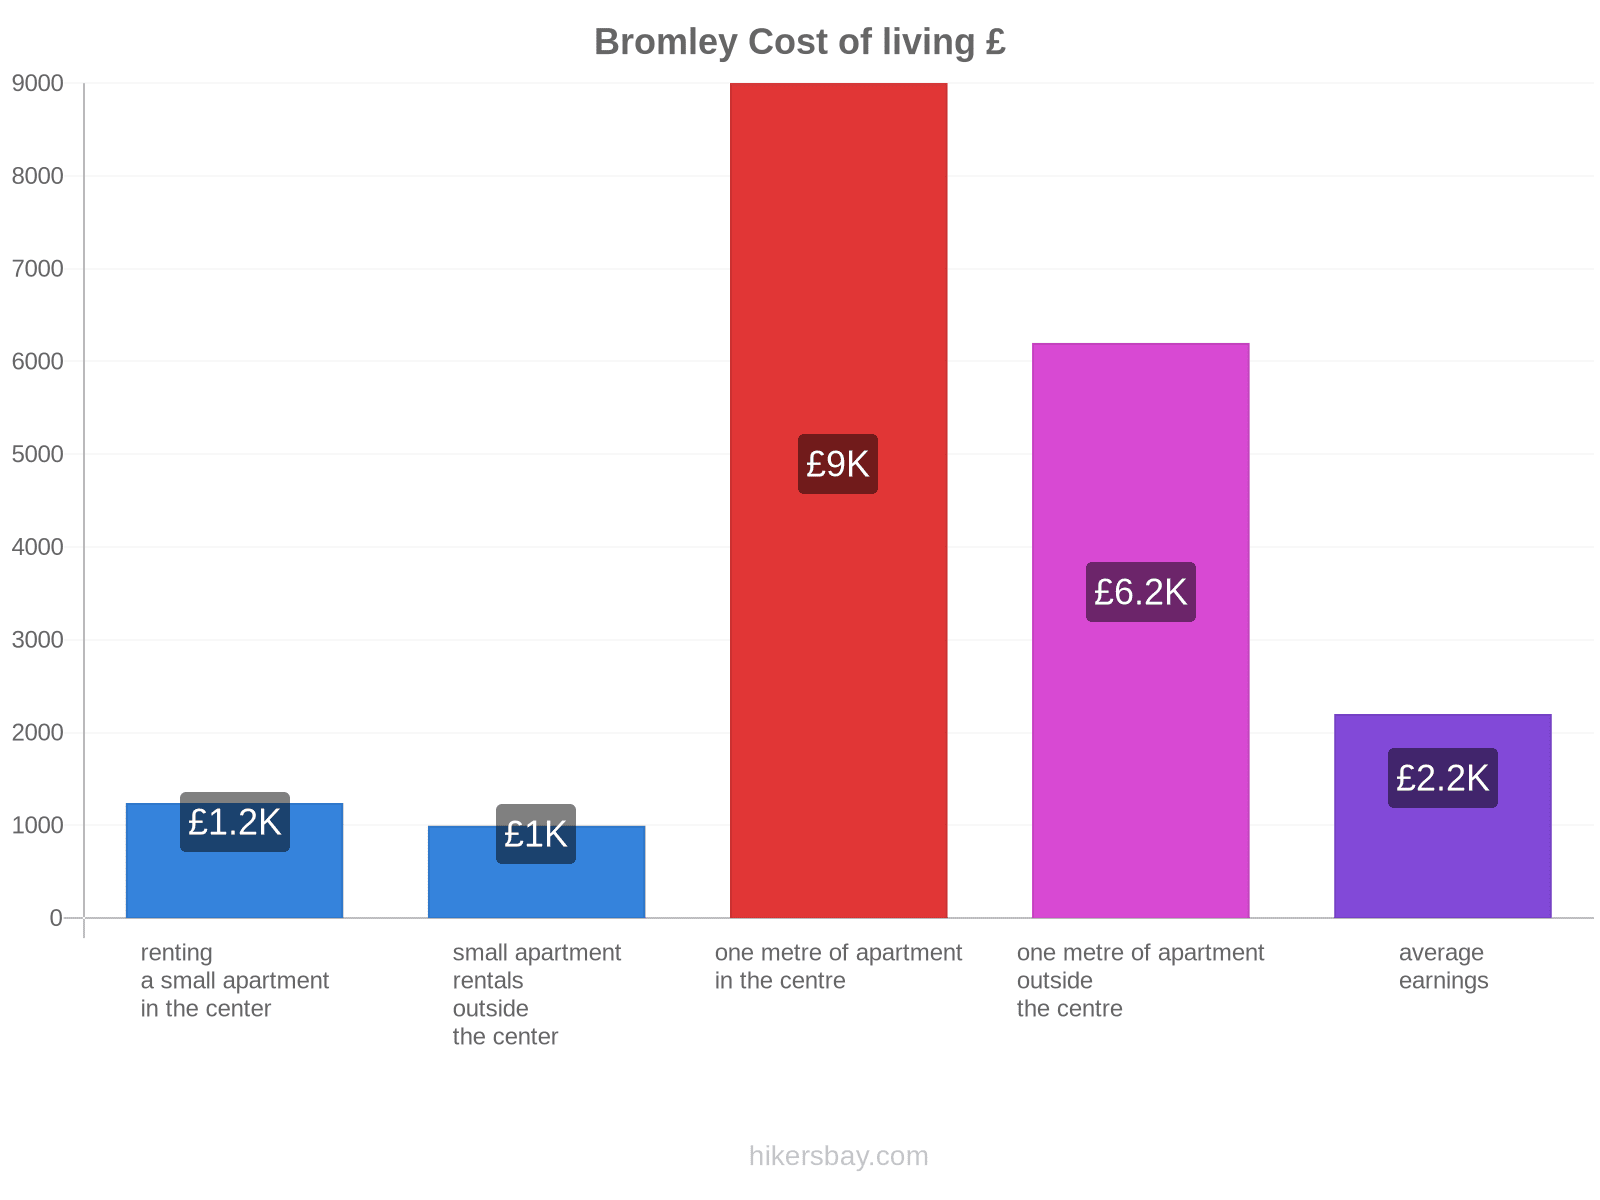 Bromley cost of living hikersbay.com